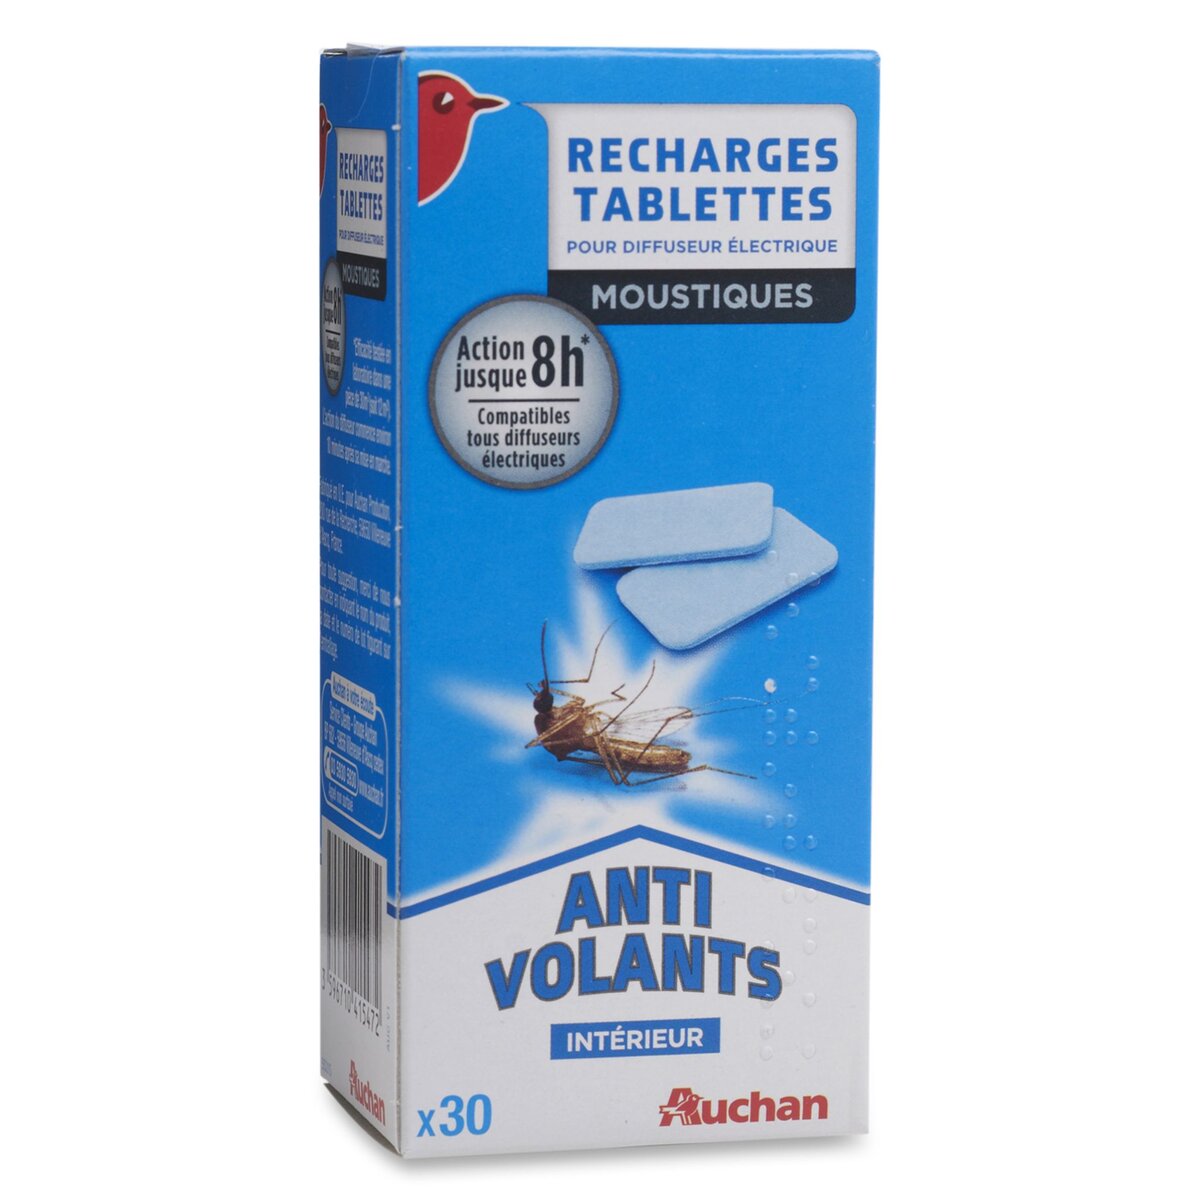 AUCHAN Recharges tablettes pour diffuseur électrique anti-moustiques efficace 30x8 heures 30 tablettes